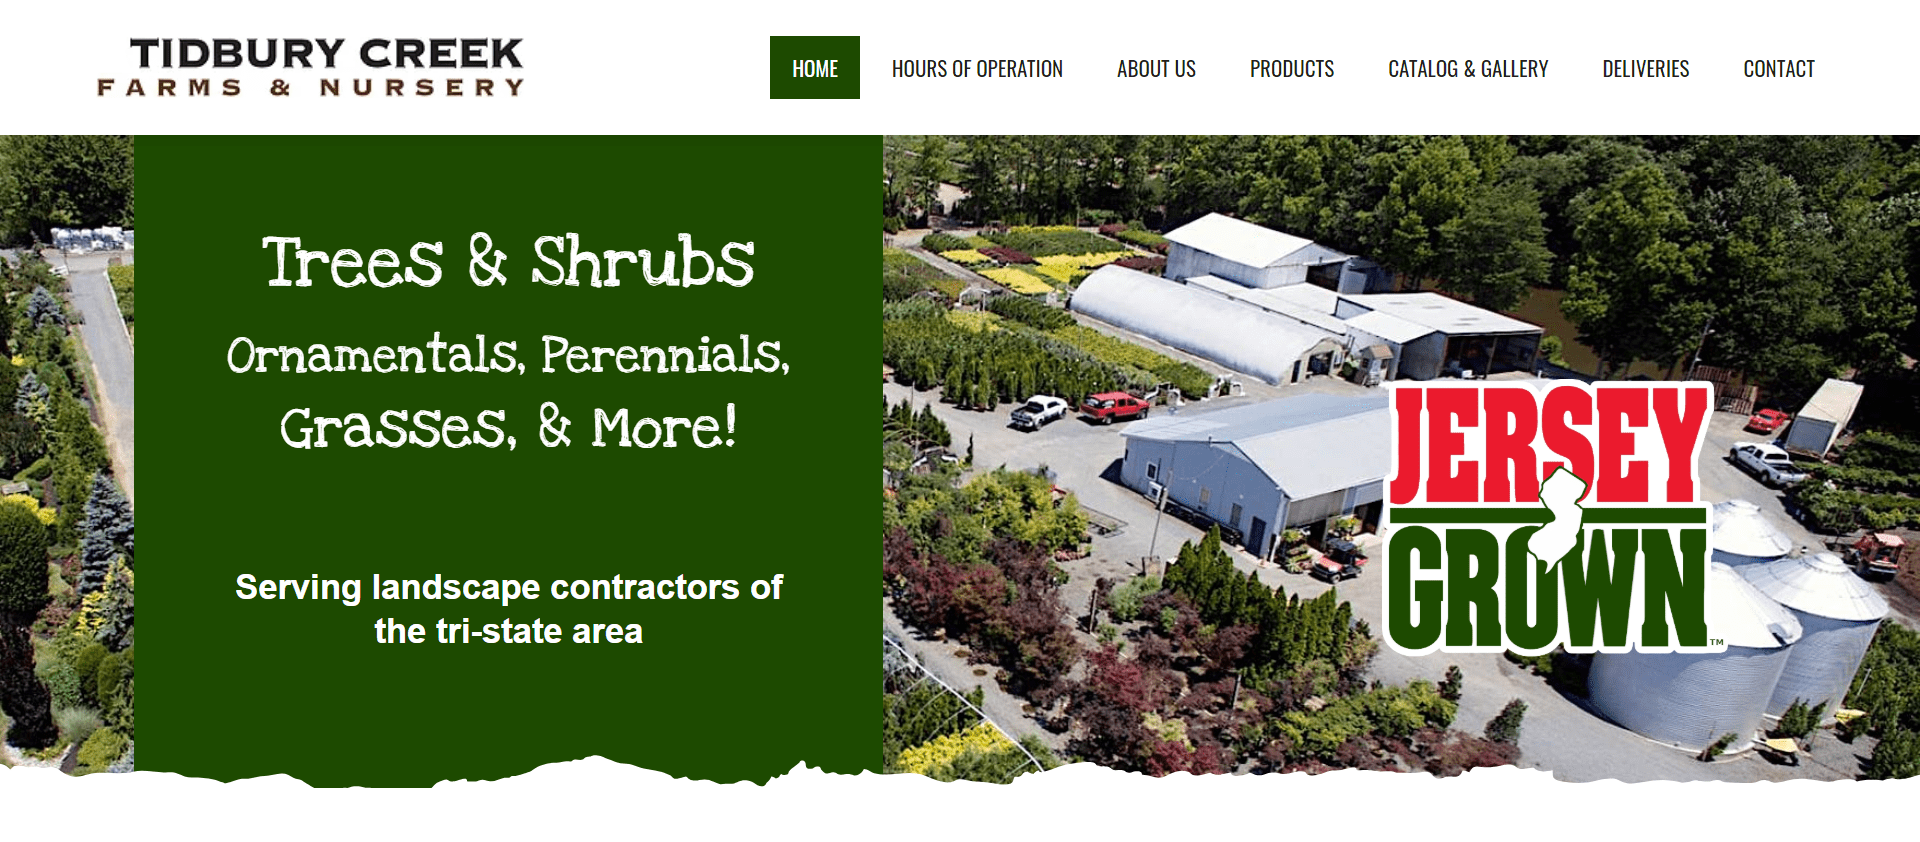 Tidbury Creek Farms homepage image